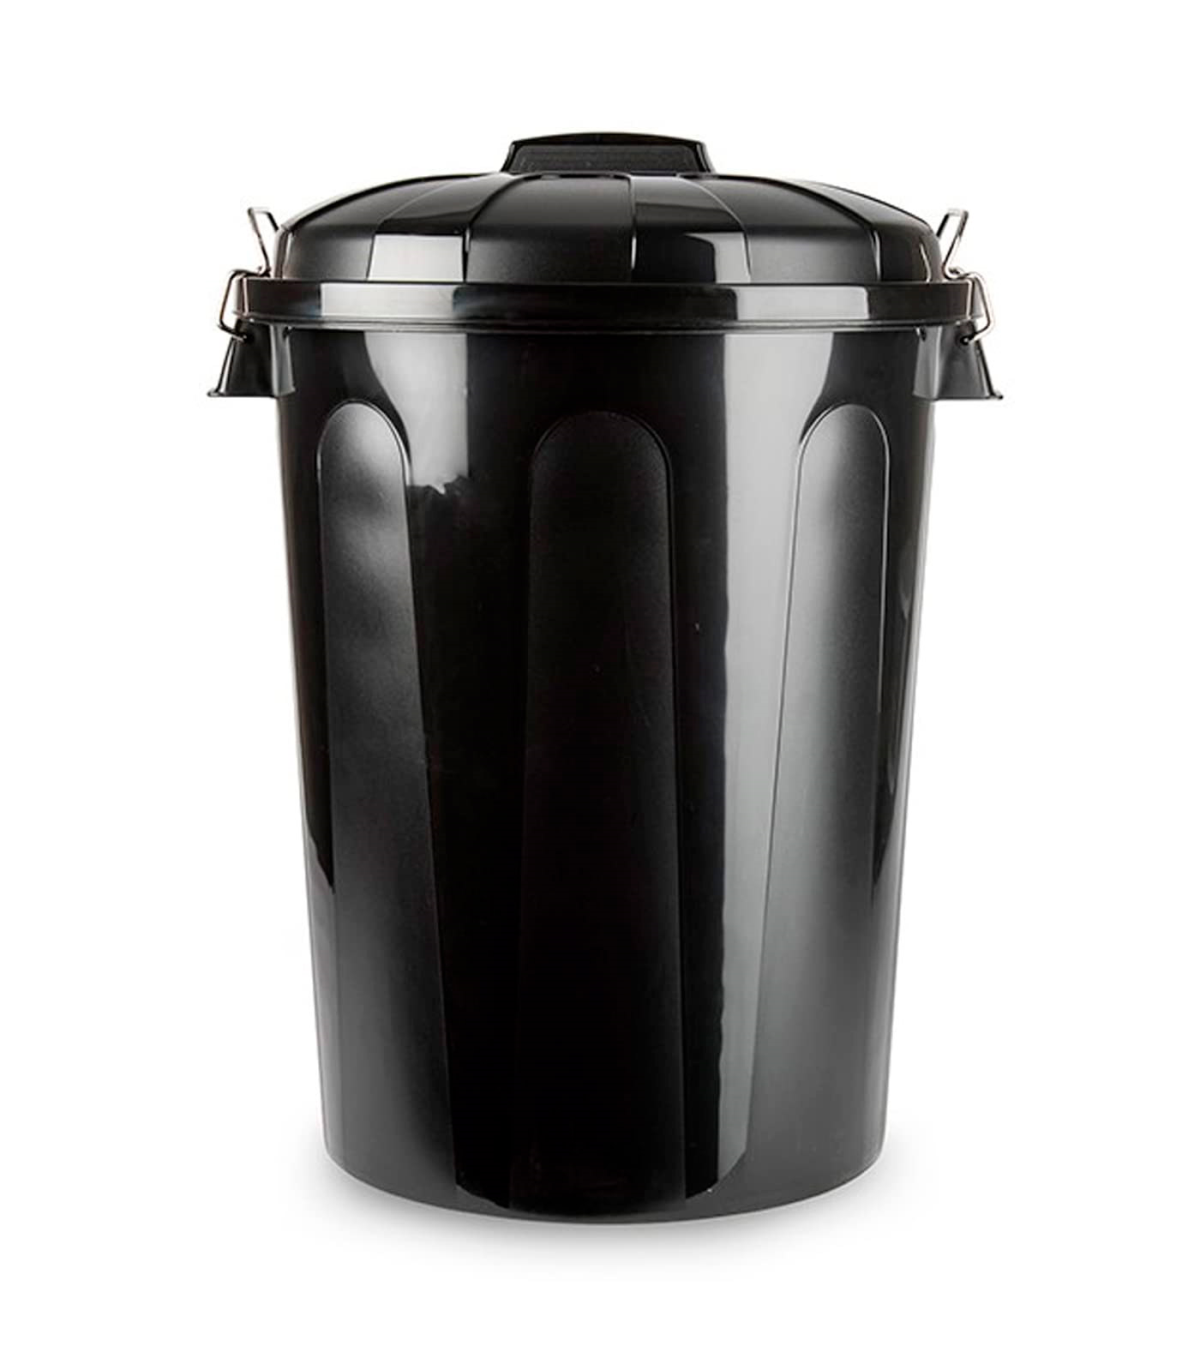 Cubo de basura de 70 litros de color negro. Contenedor resistente